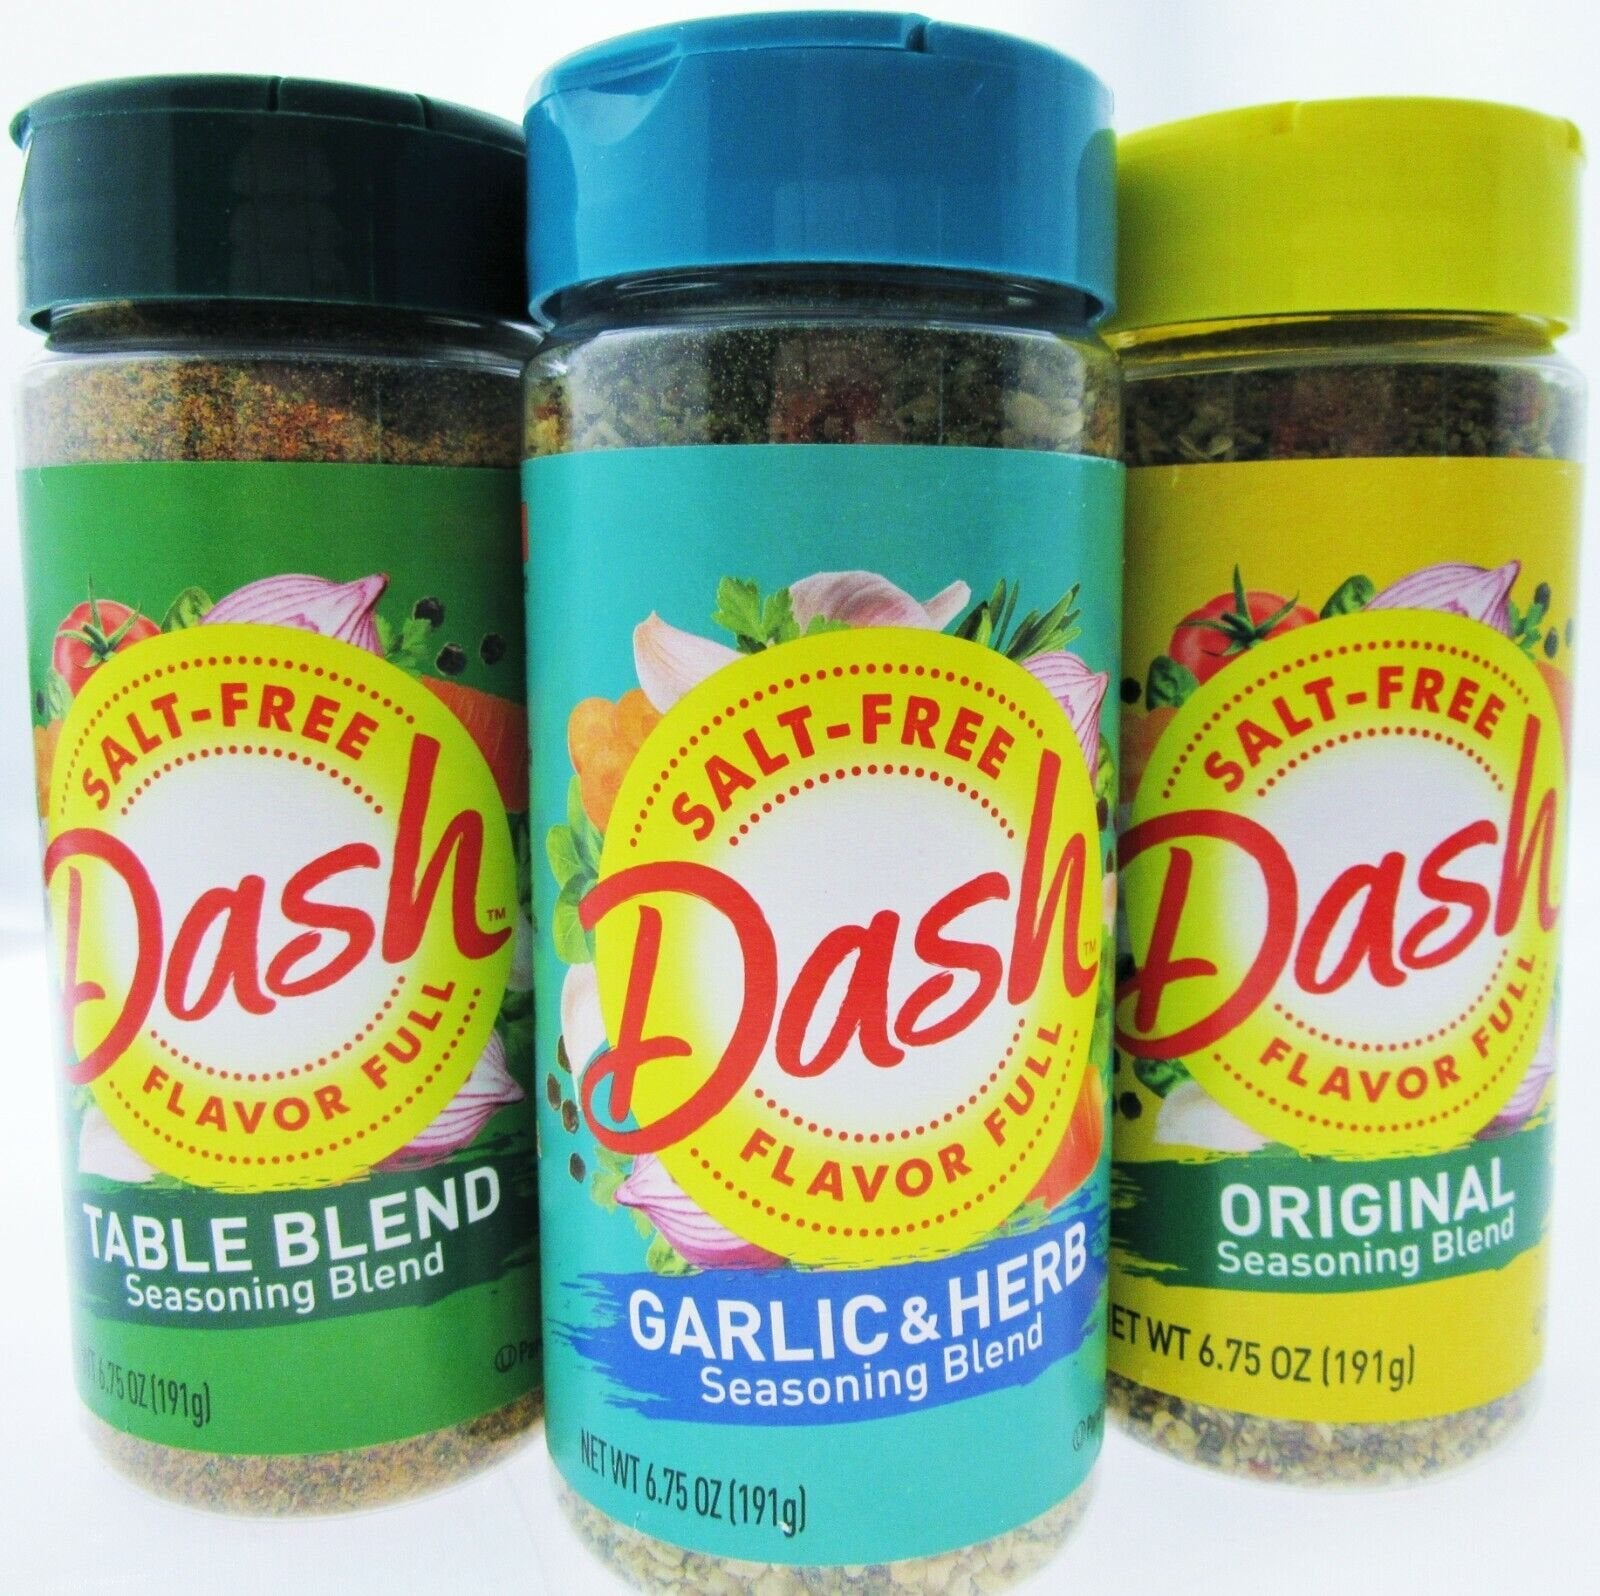 Dash Salt-Free Garlic & Herb Seasoning Blend